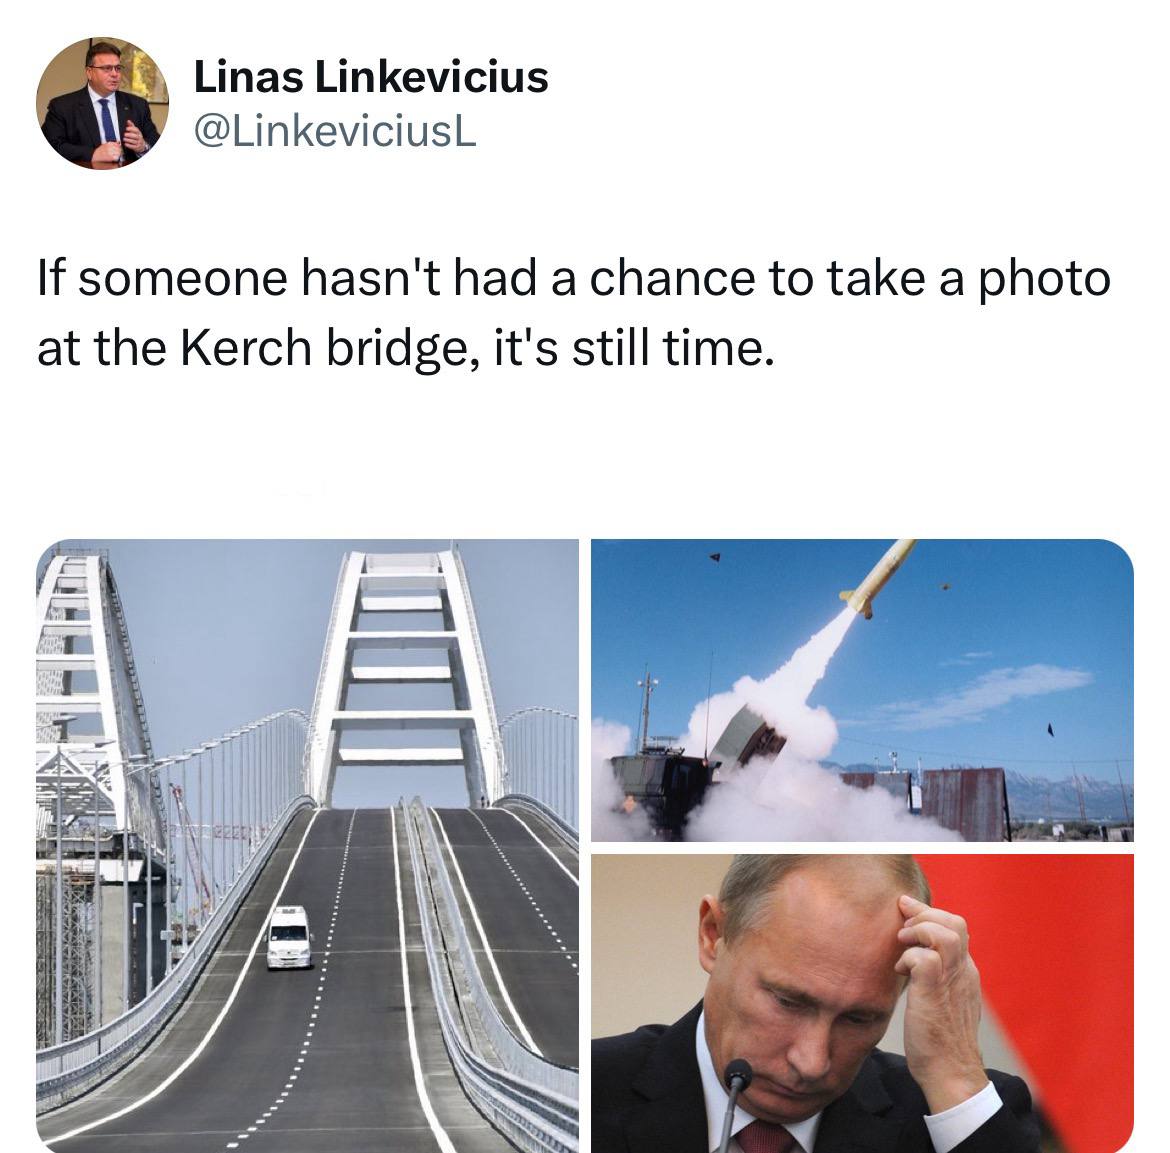 L’ambassadeur de la Lituanie en Suède menace de faire sauter le pont de Crimée